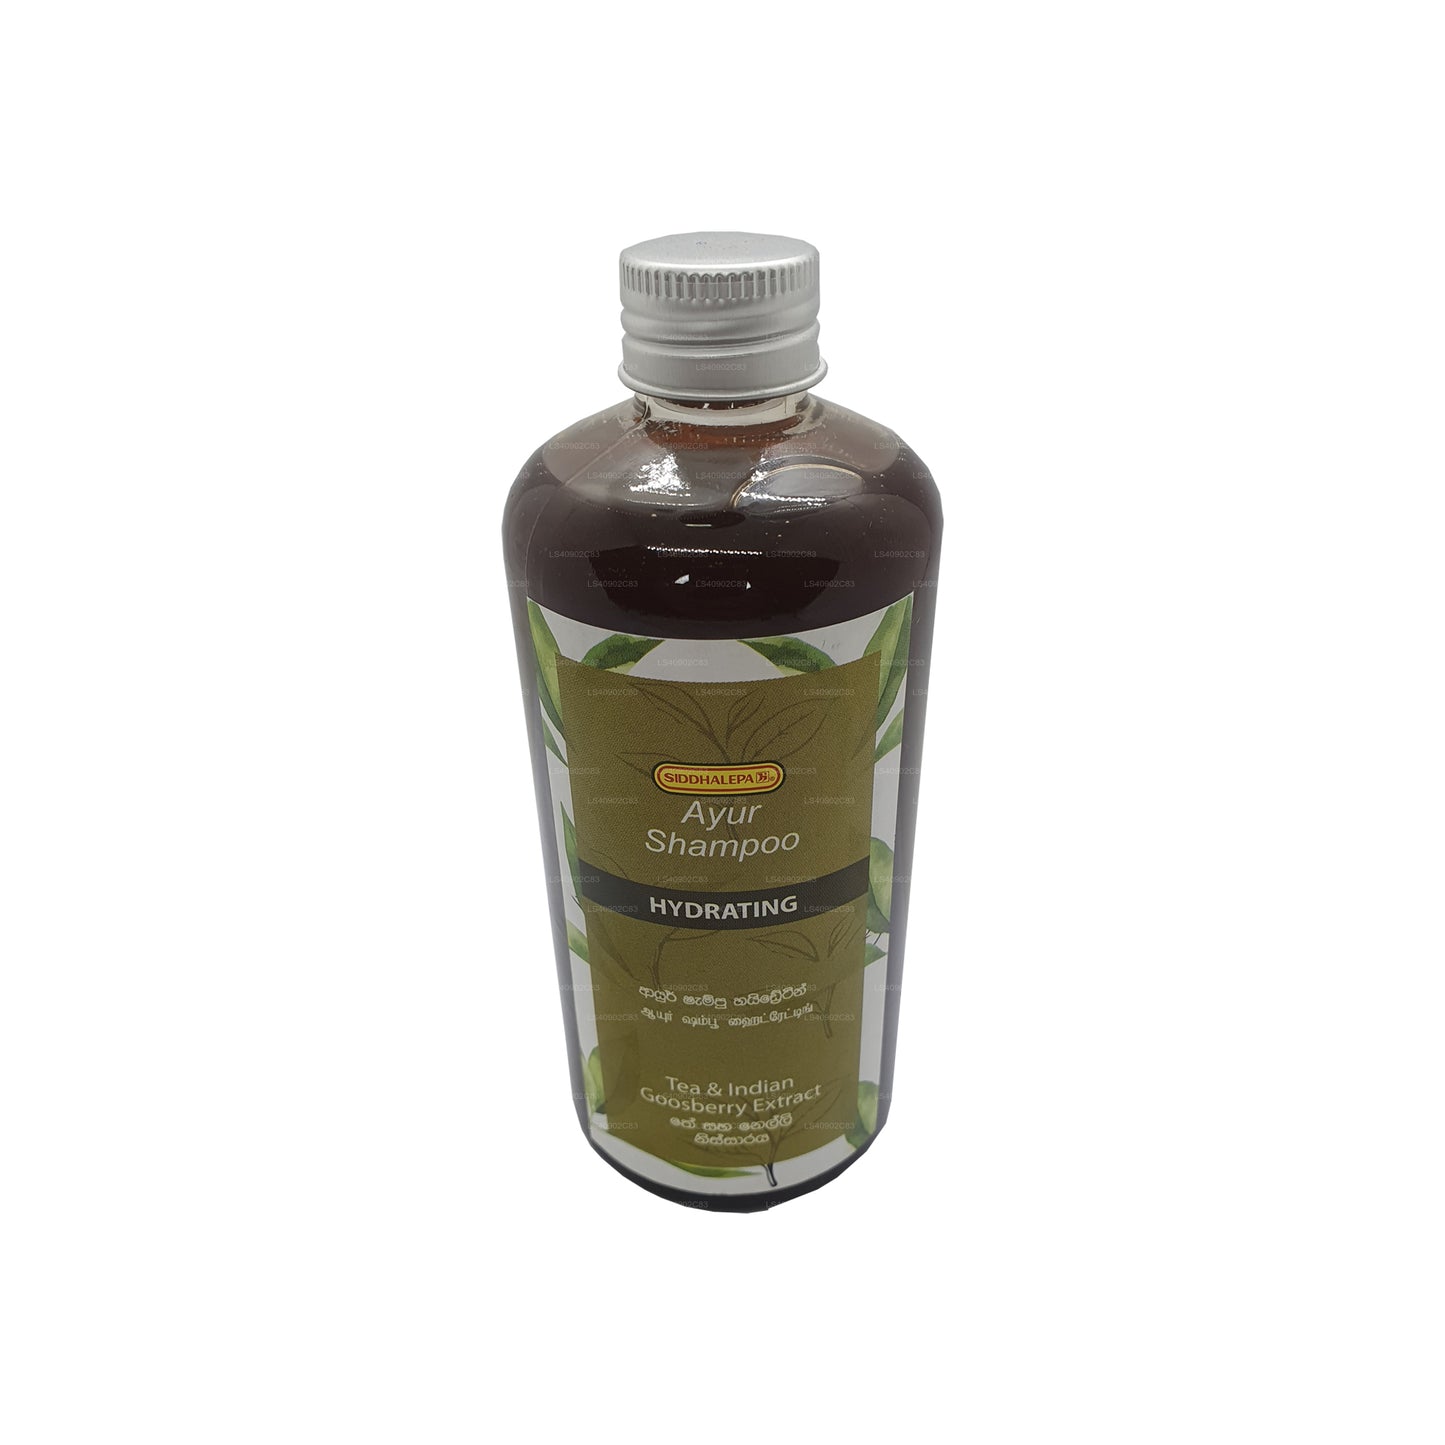 Siddhalepa Ayur Shampoo Hydrating (300ml)